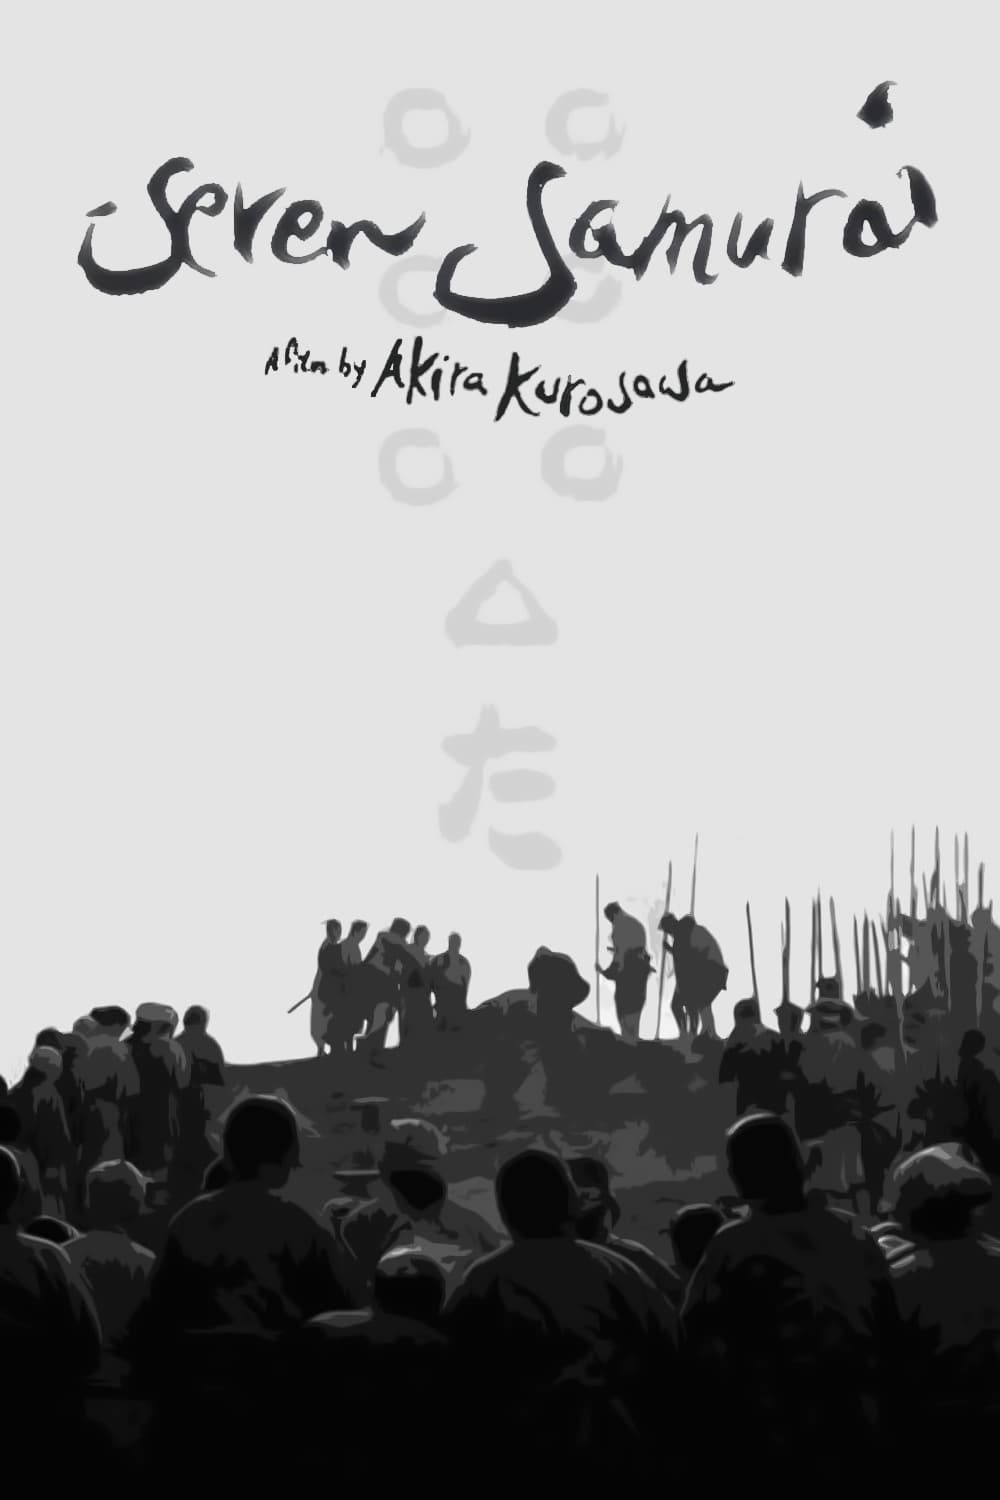 Seven Samurai Movie poster